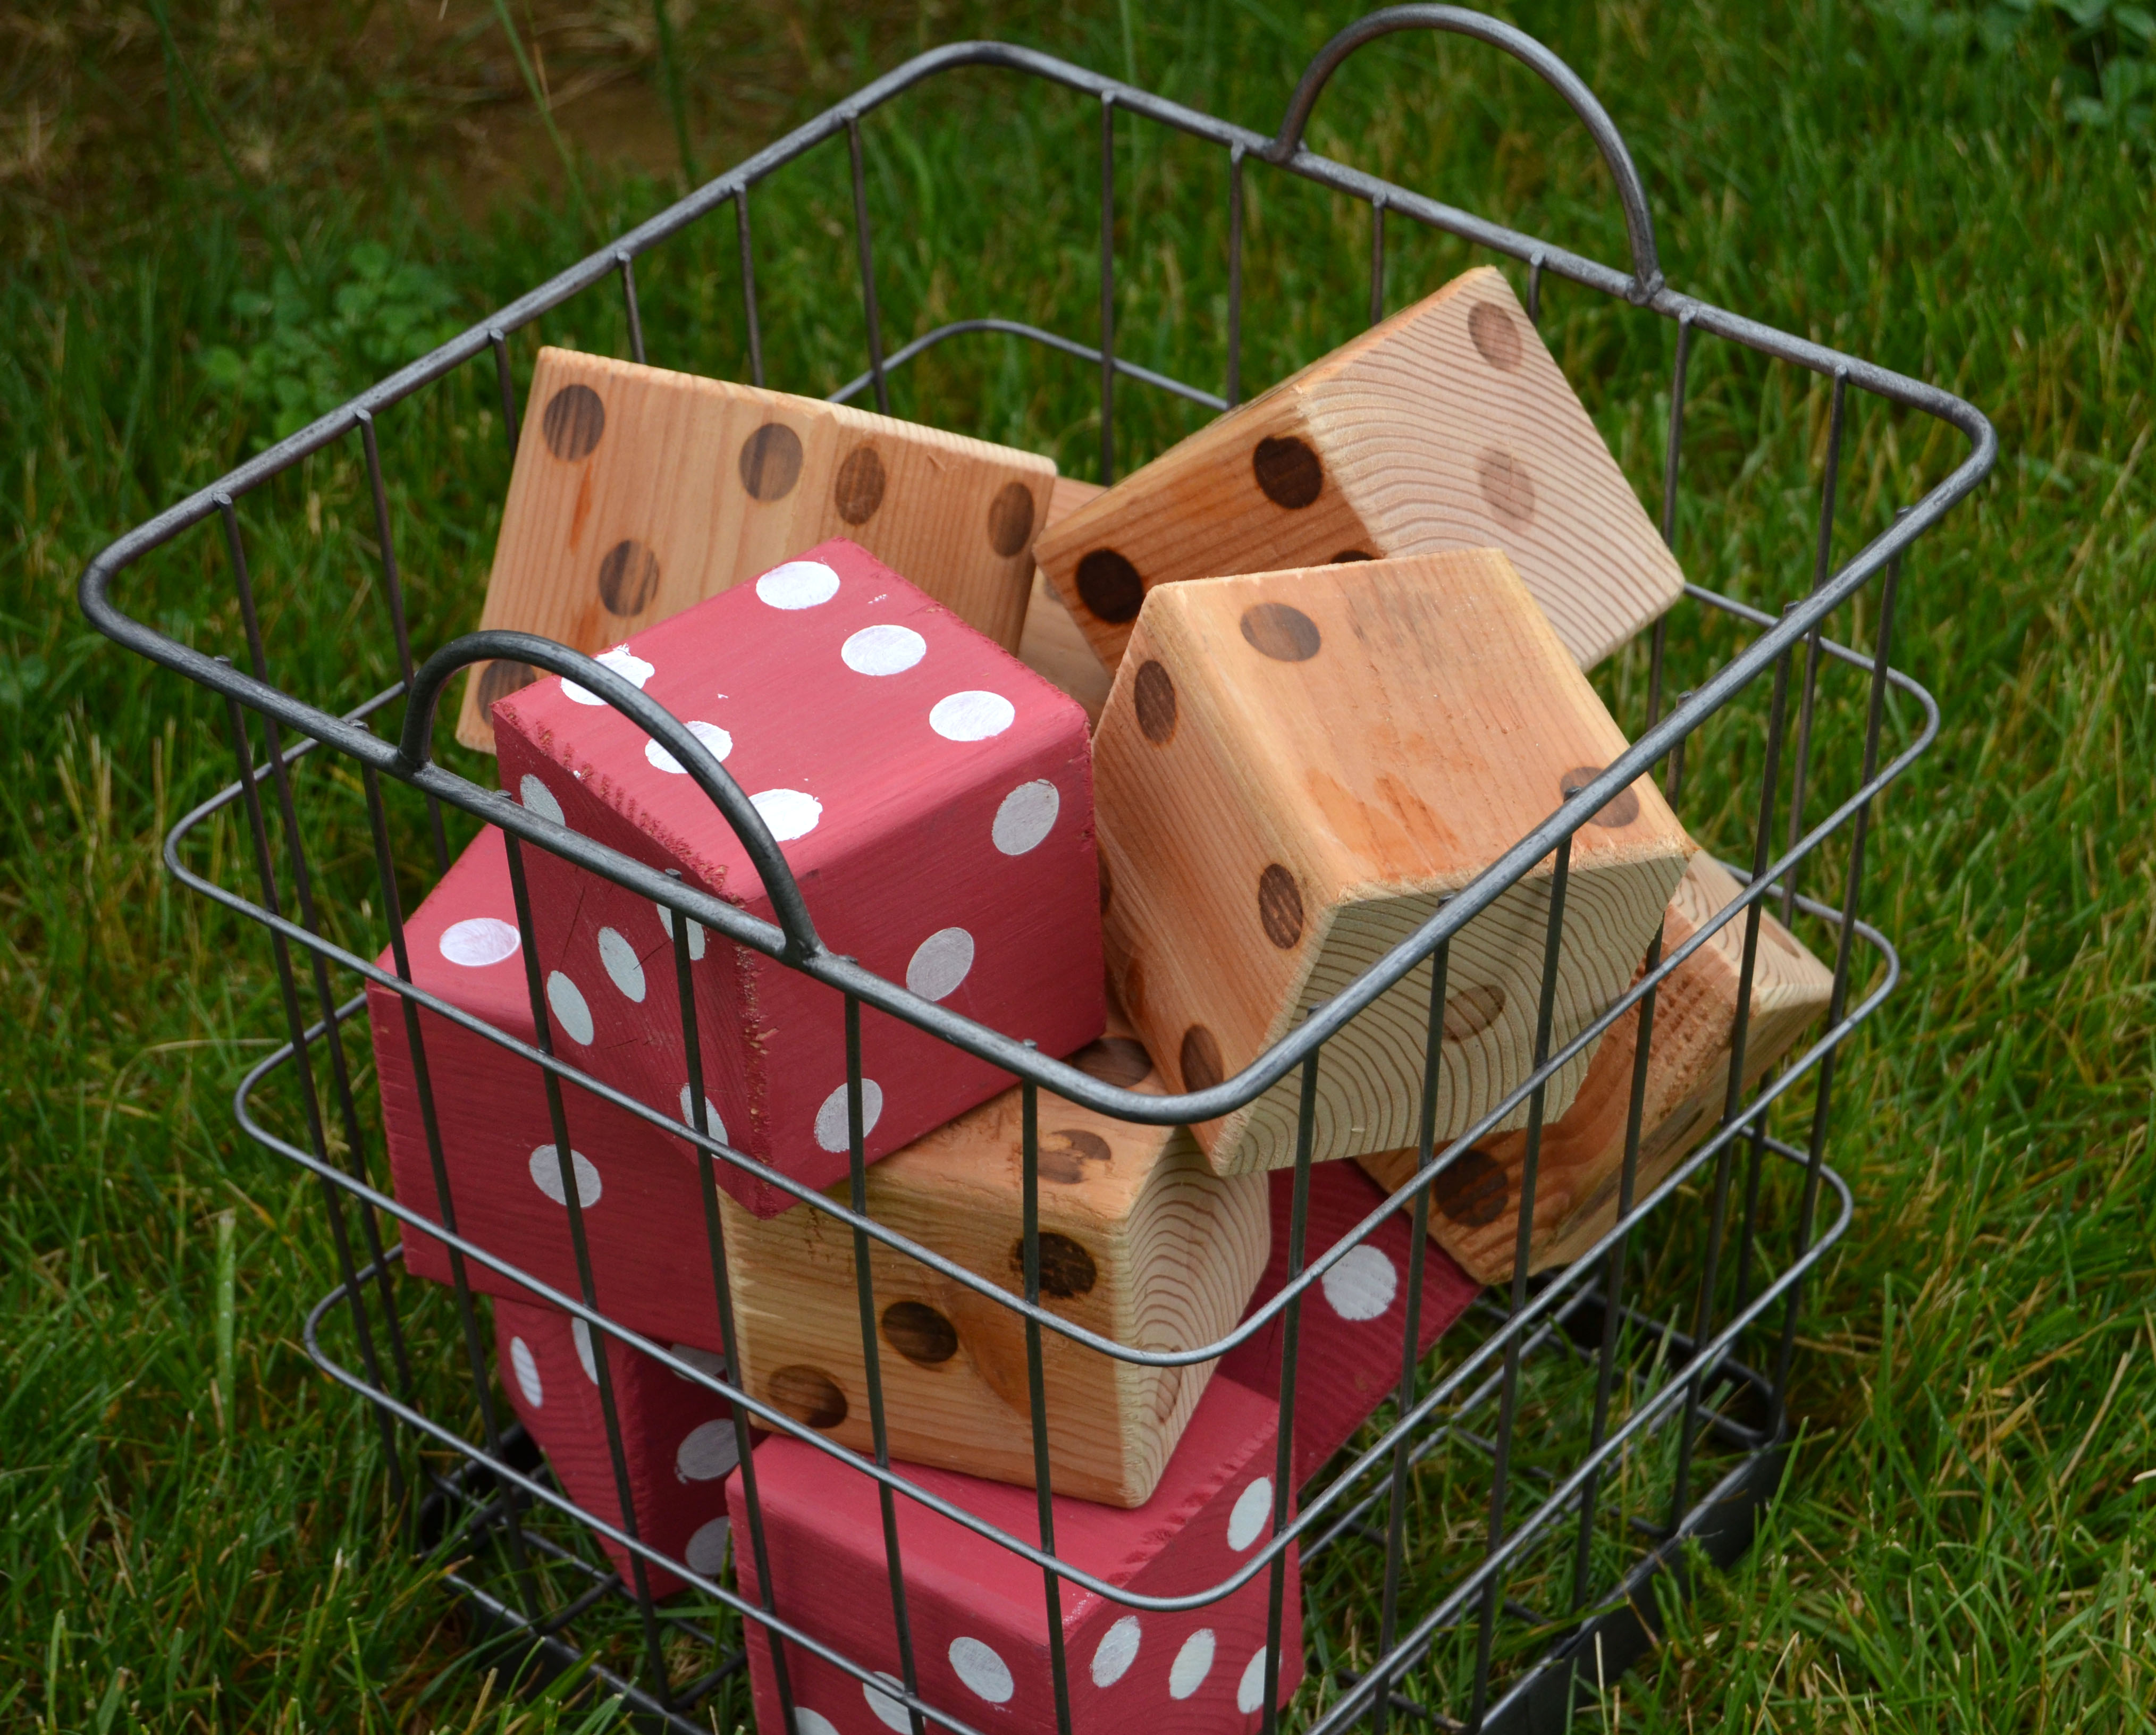 DIY wooden yard dice